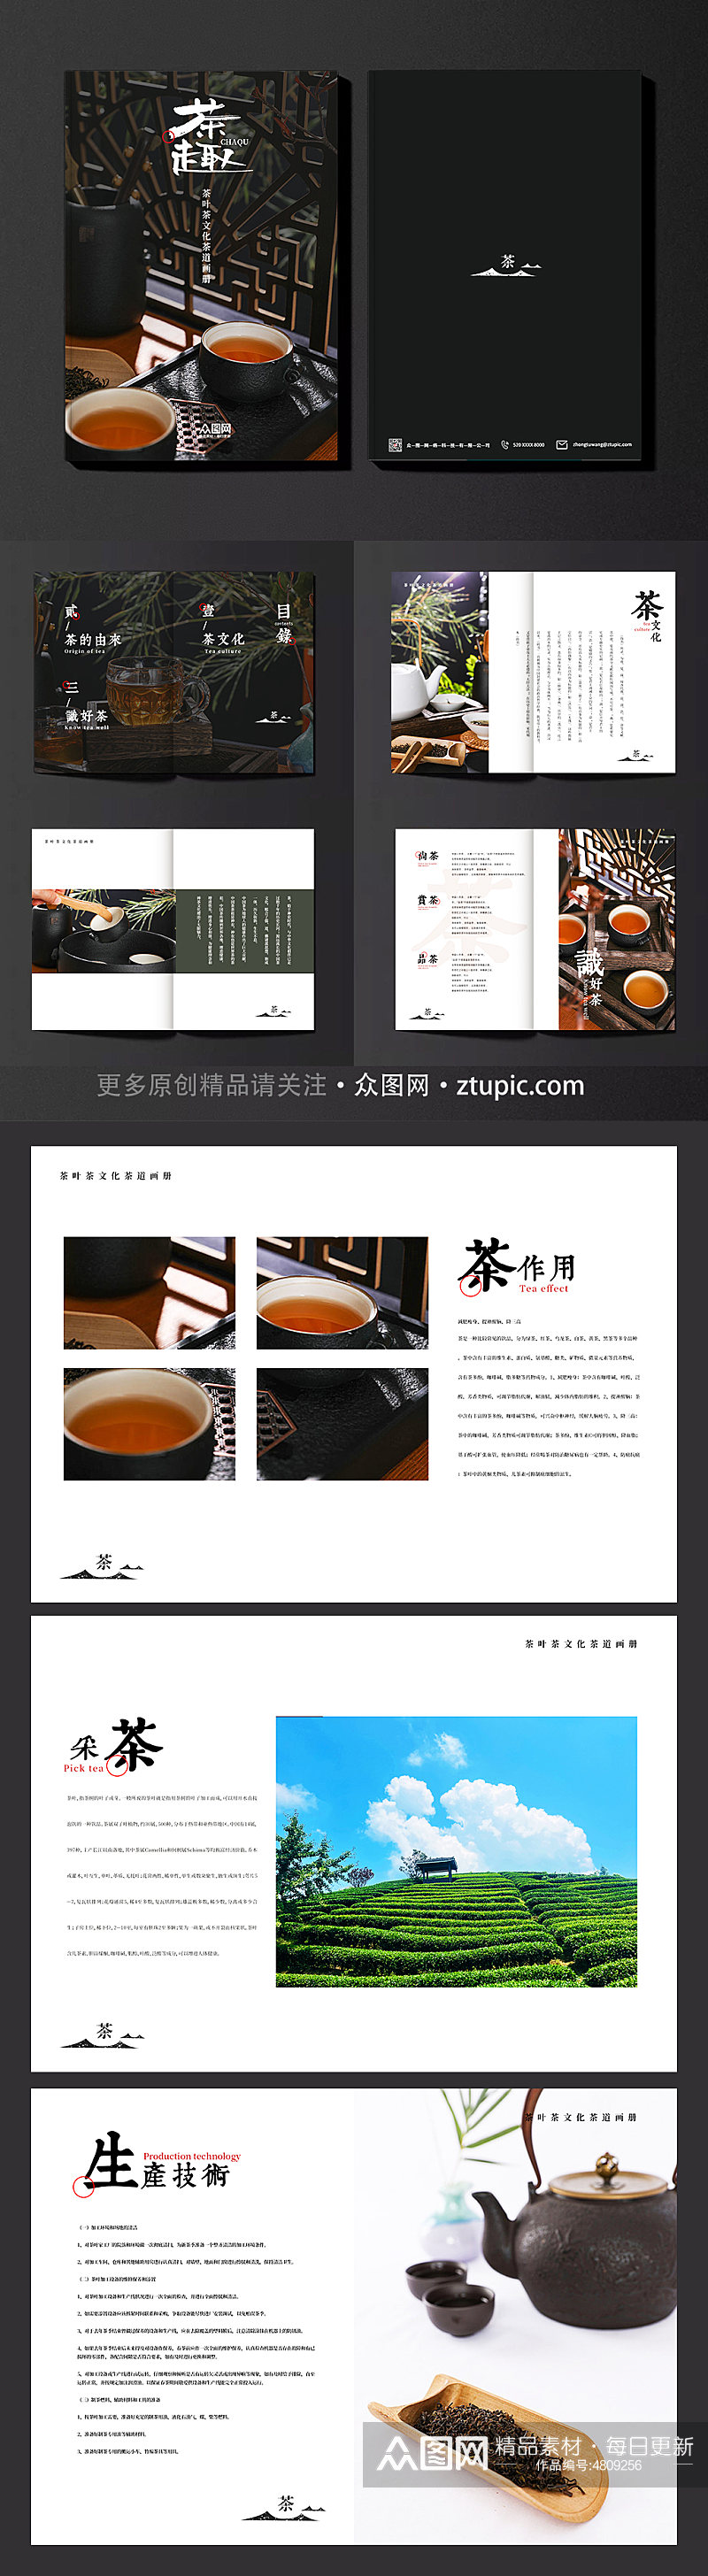 茶趣画册茶叶茶文化茶道宣传册画册素材